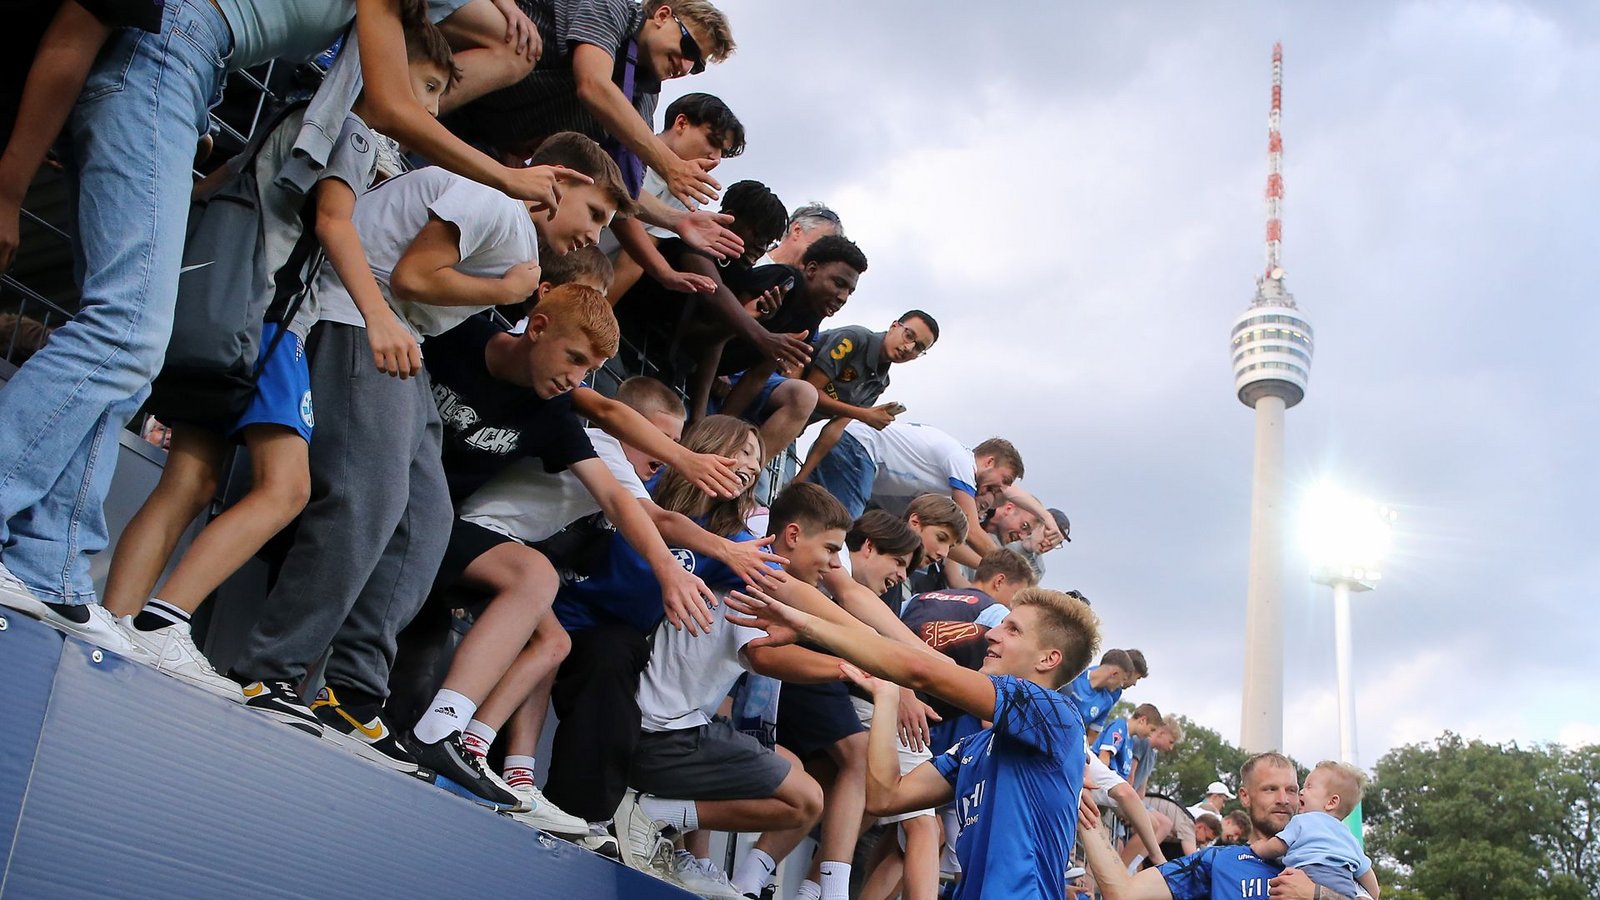 Rieseneuphorie unterm Fernsehturm – doch die Kickers geben sich auch demütig.Foto: Baumann/Julia Rahn